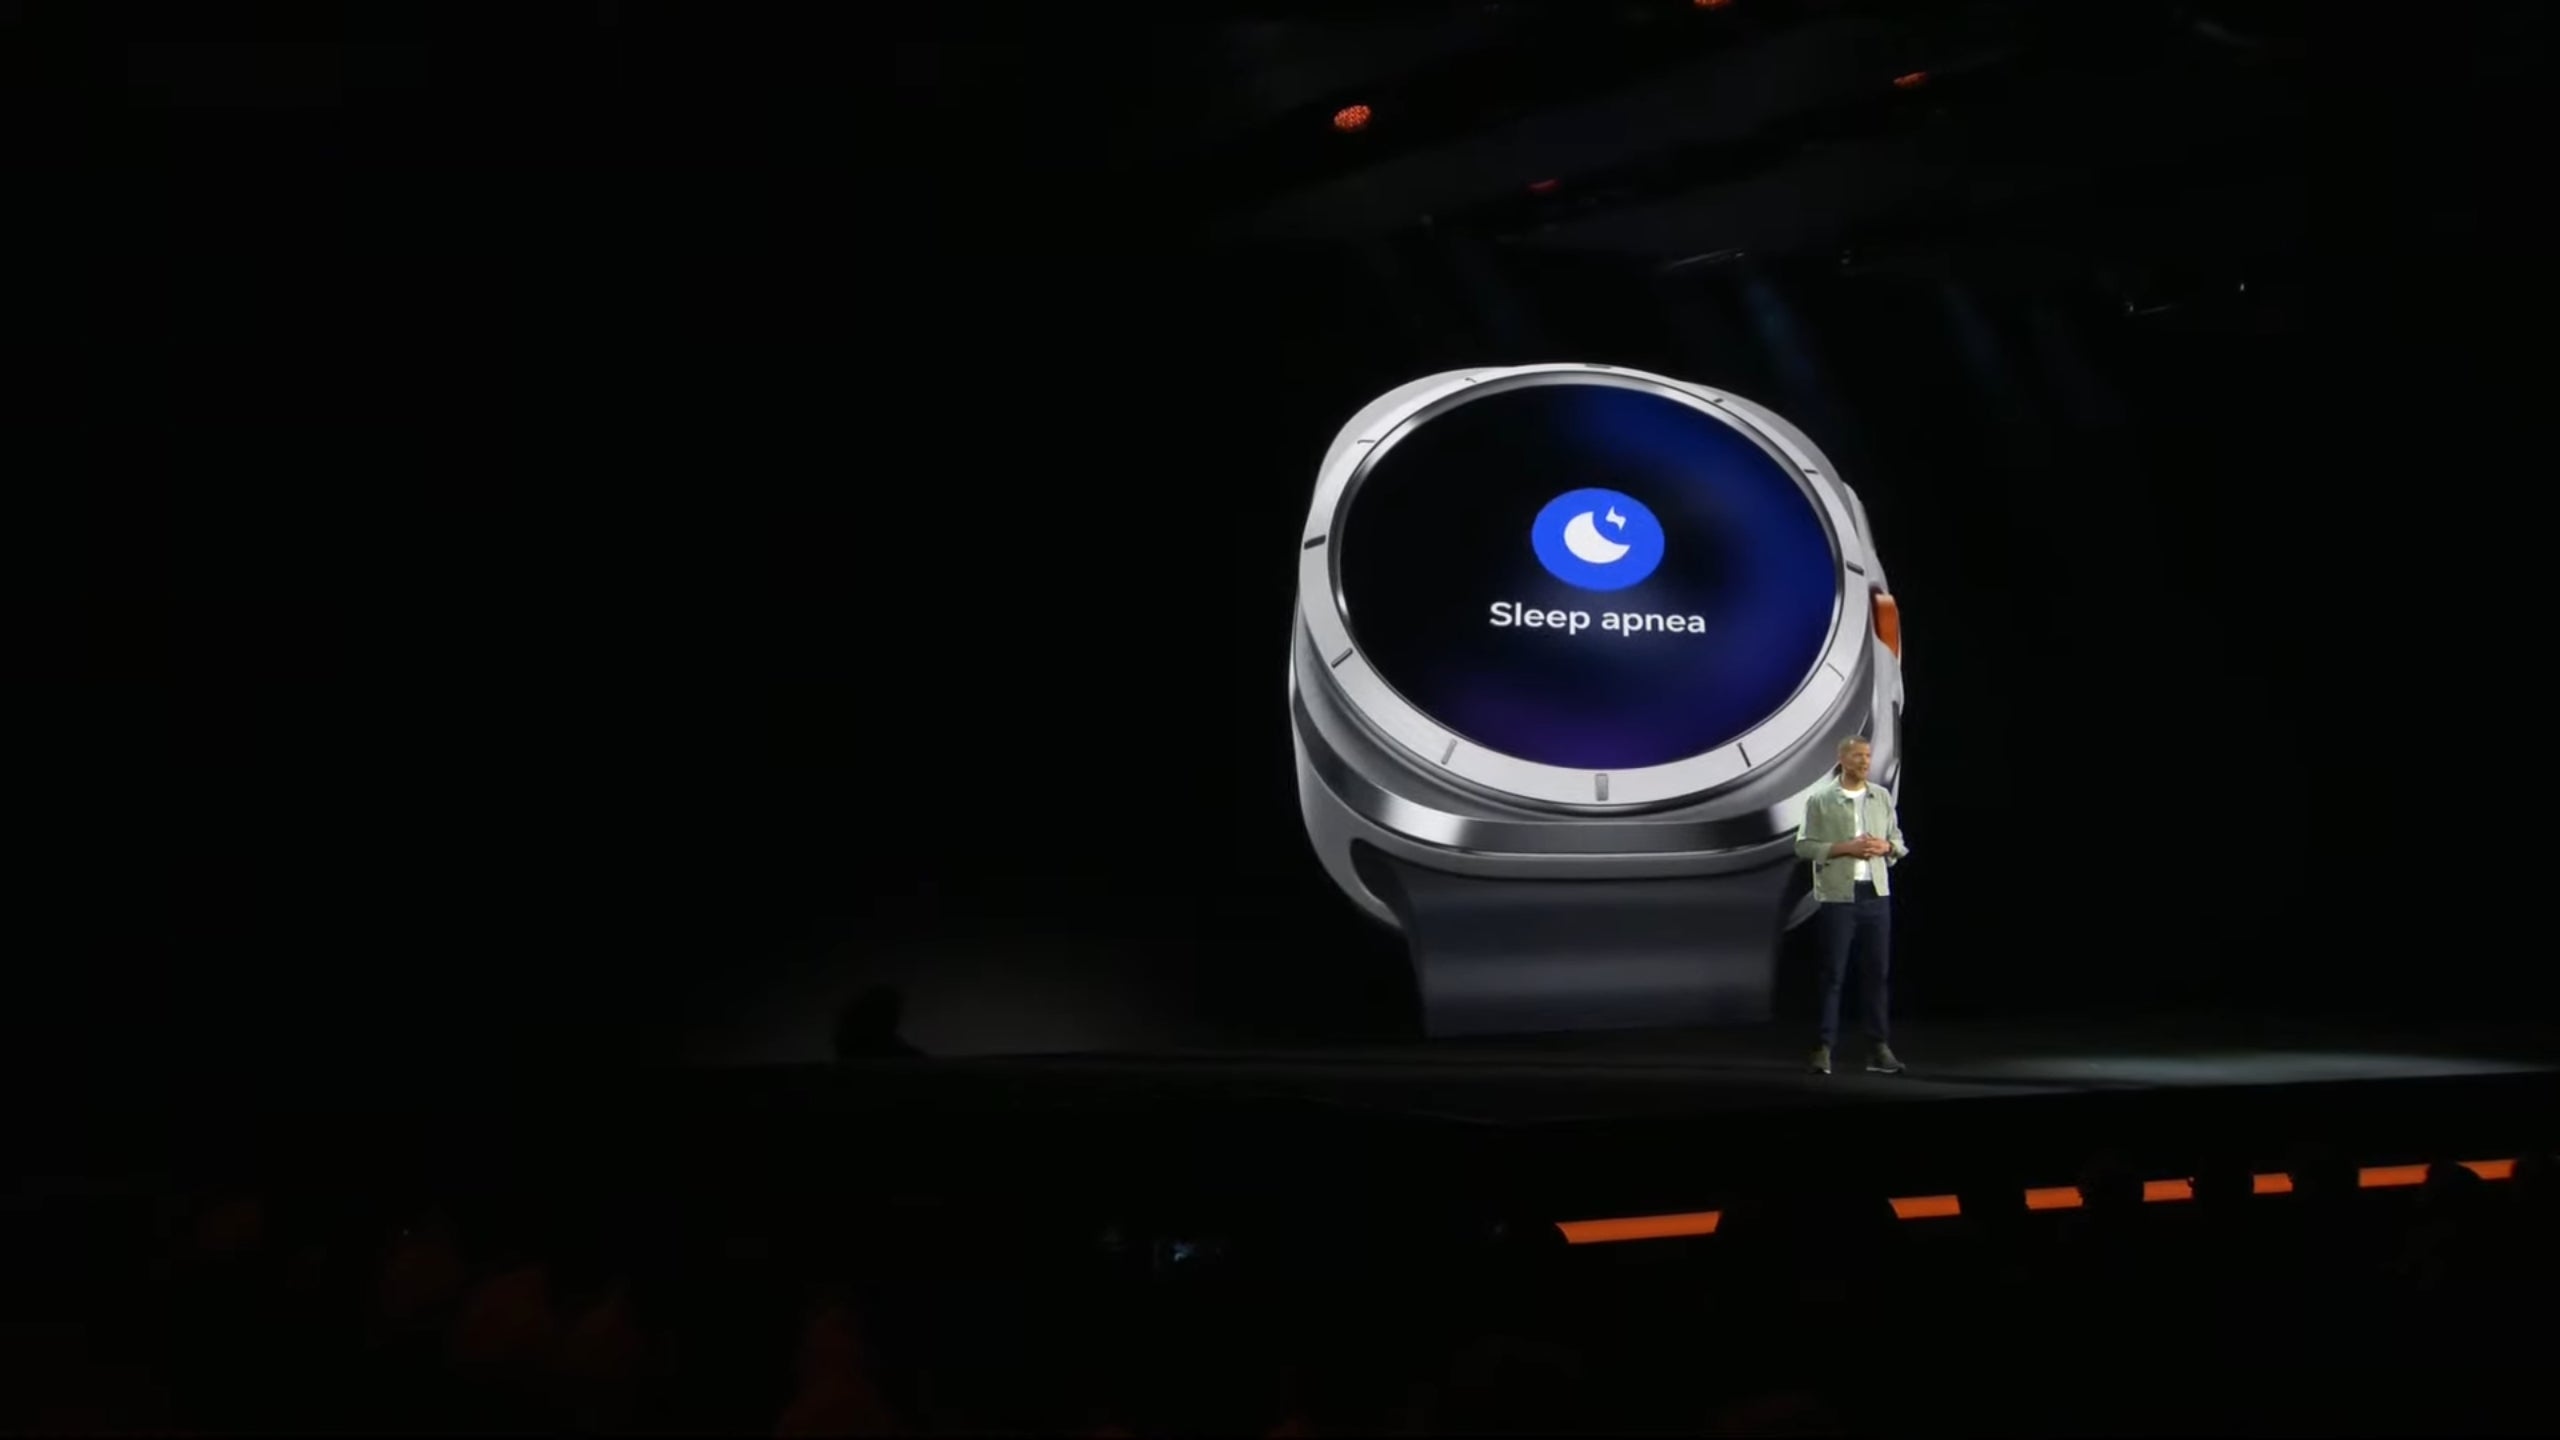 Yeni Uyku Apnesi özelliğine sahip Galaxy Watch Ultra. - Samsung, Galaxy Watch Ultra'yı duyurdu: Şimdiye kadar üretilmiş en güçlü Galaxy Watch